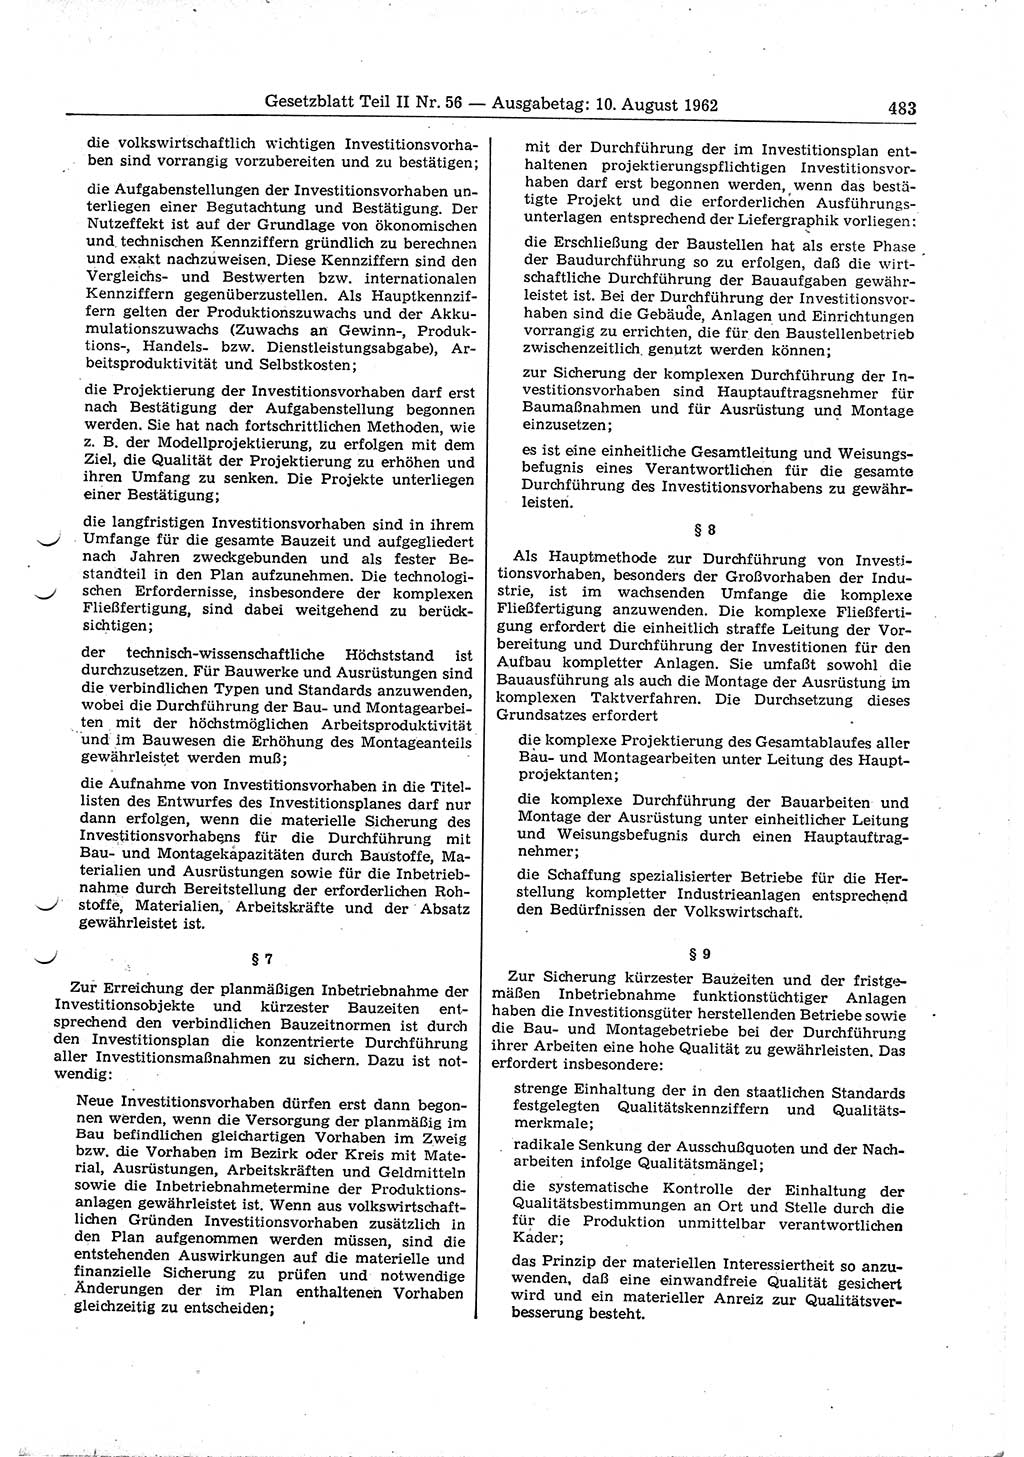 Gesetzblatt (GBl.) der Deutschen Demokratischen Republik (DDR) Teil ⅠⅠ 1962, Seite 483 (GBl. DDR ⅠⅠ 1962, S. 483)